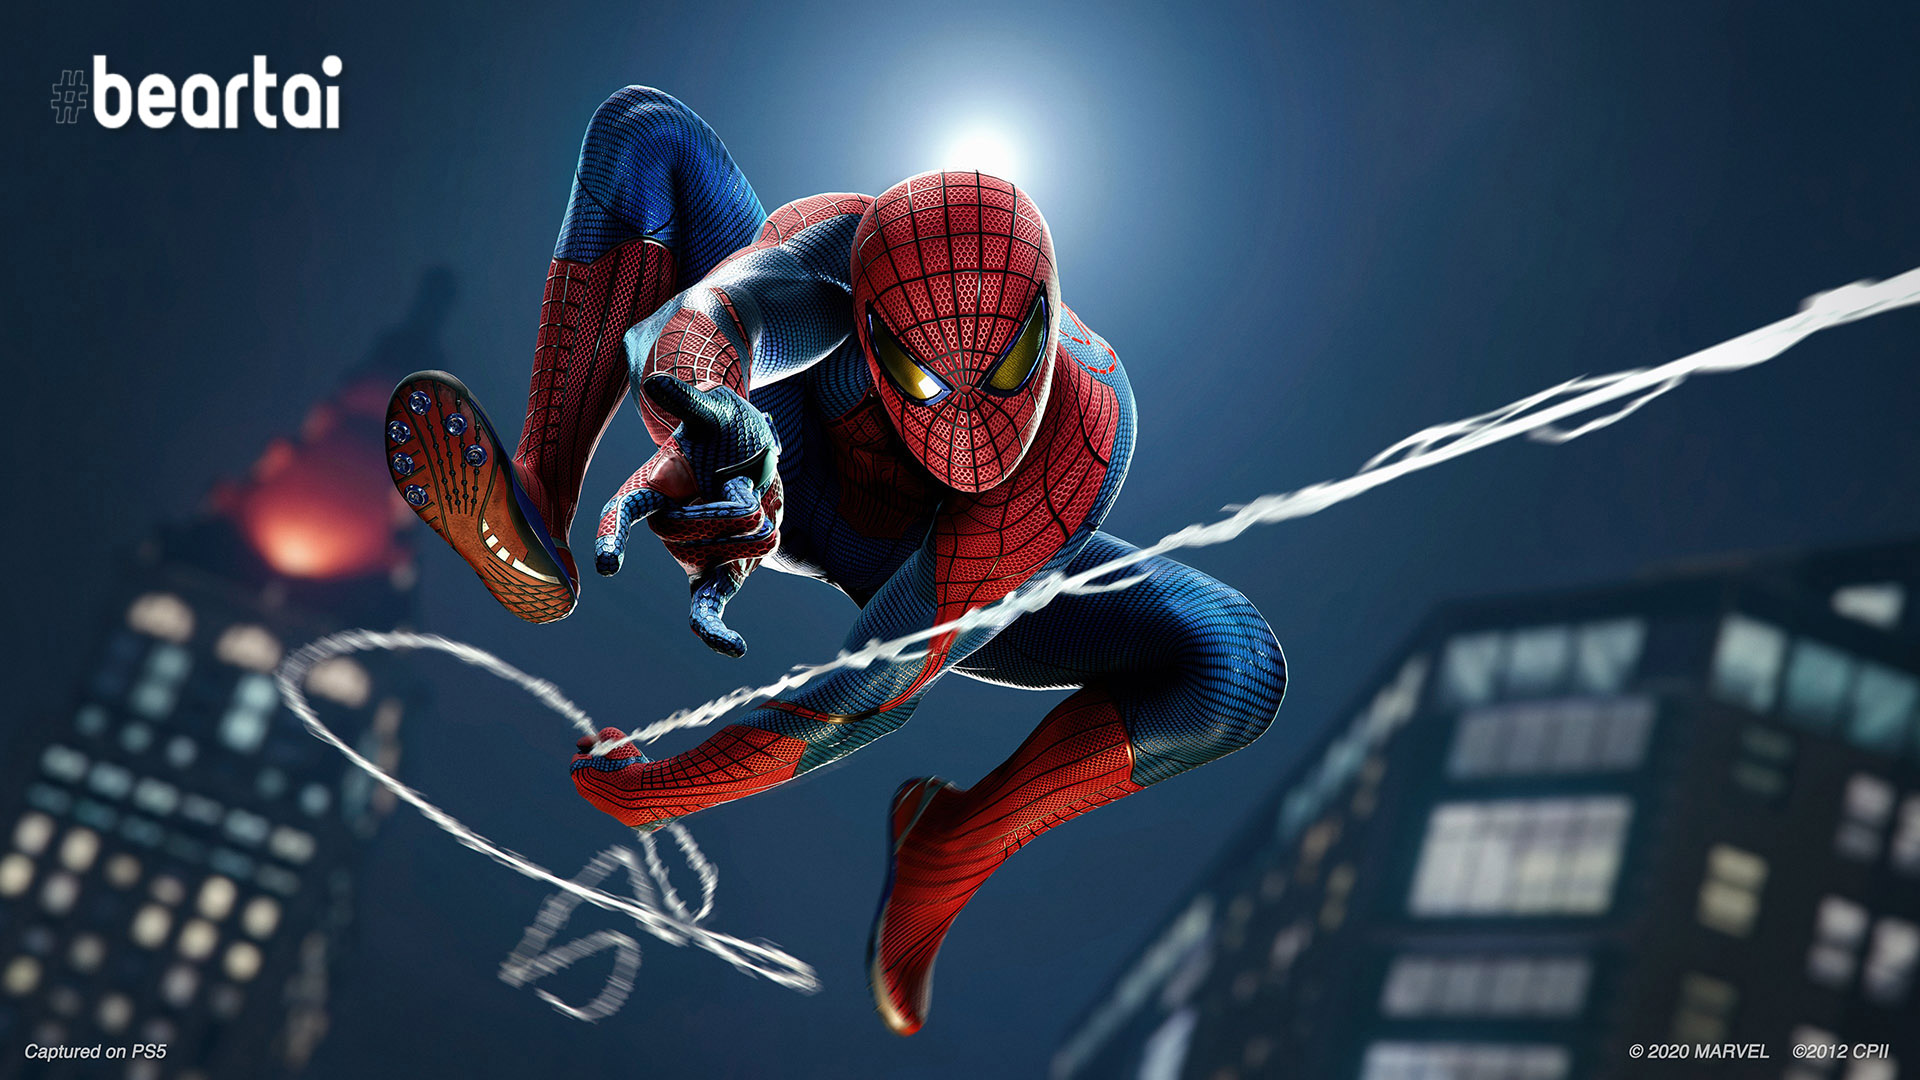 Marvel’s Spider-Man เวอร์ชัน PS4 สามารถถ่ายโอนเซฟไปยังเกมเวอร์ชัน PS5 ในช่วงปลายเดือนพฤศจิกายนนี้